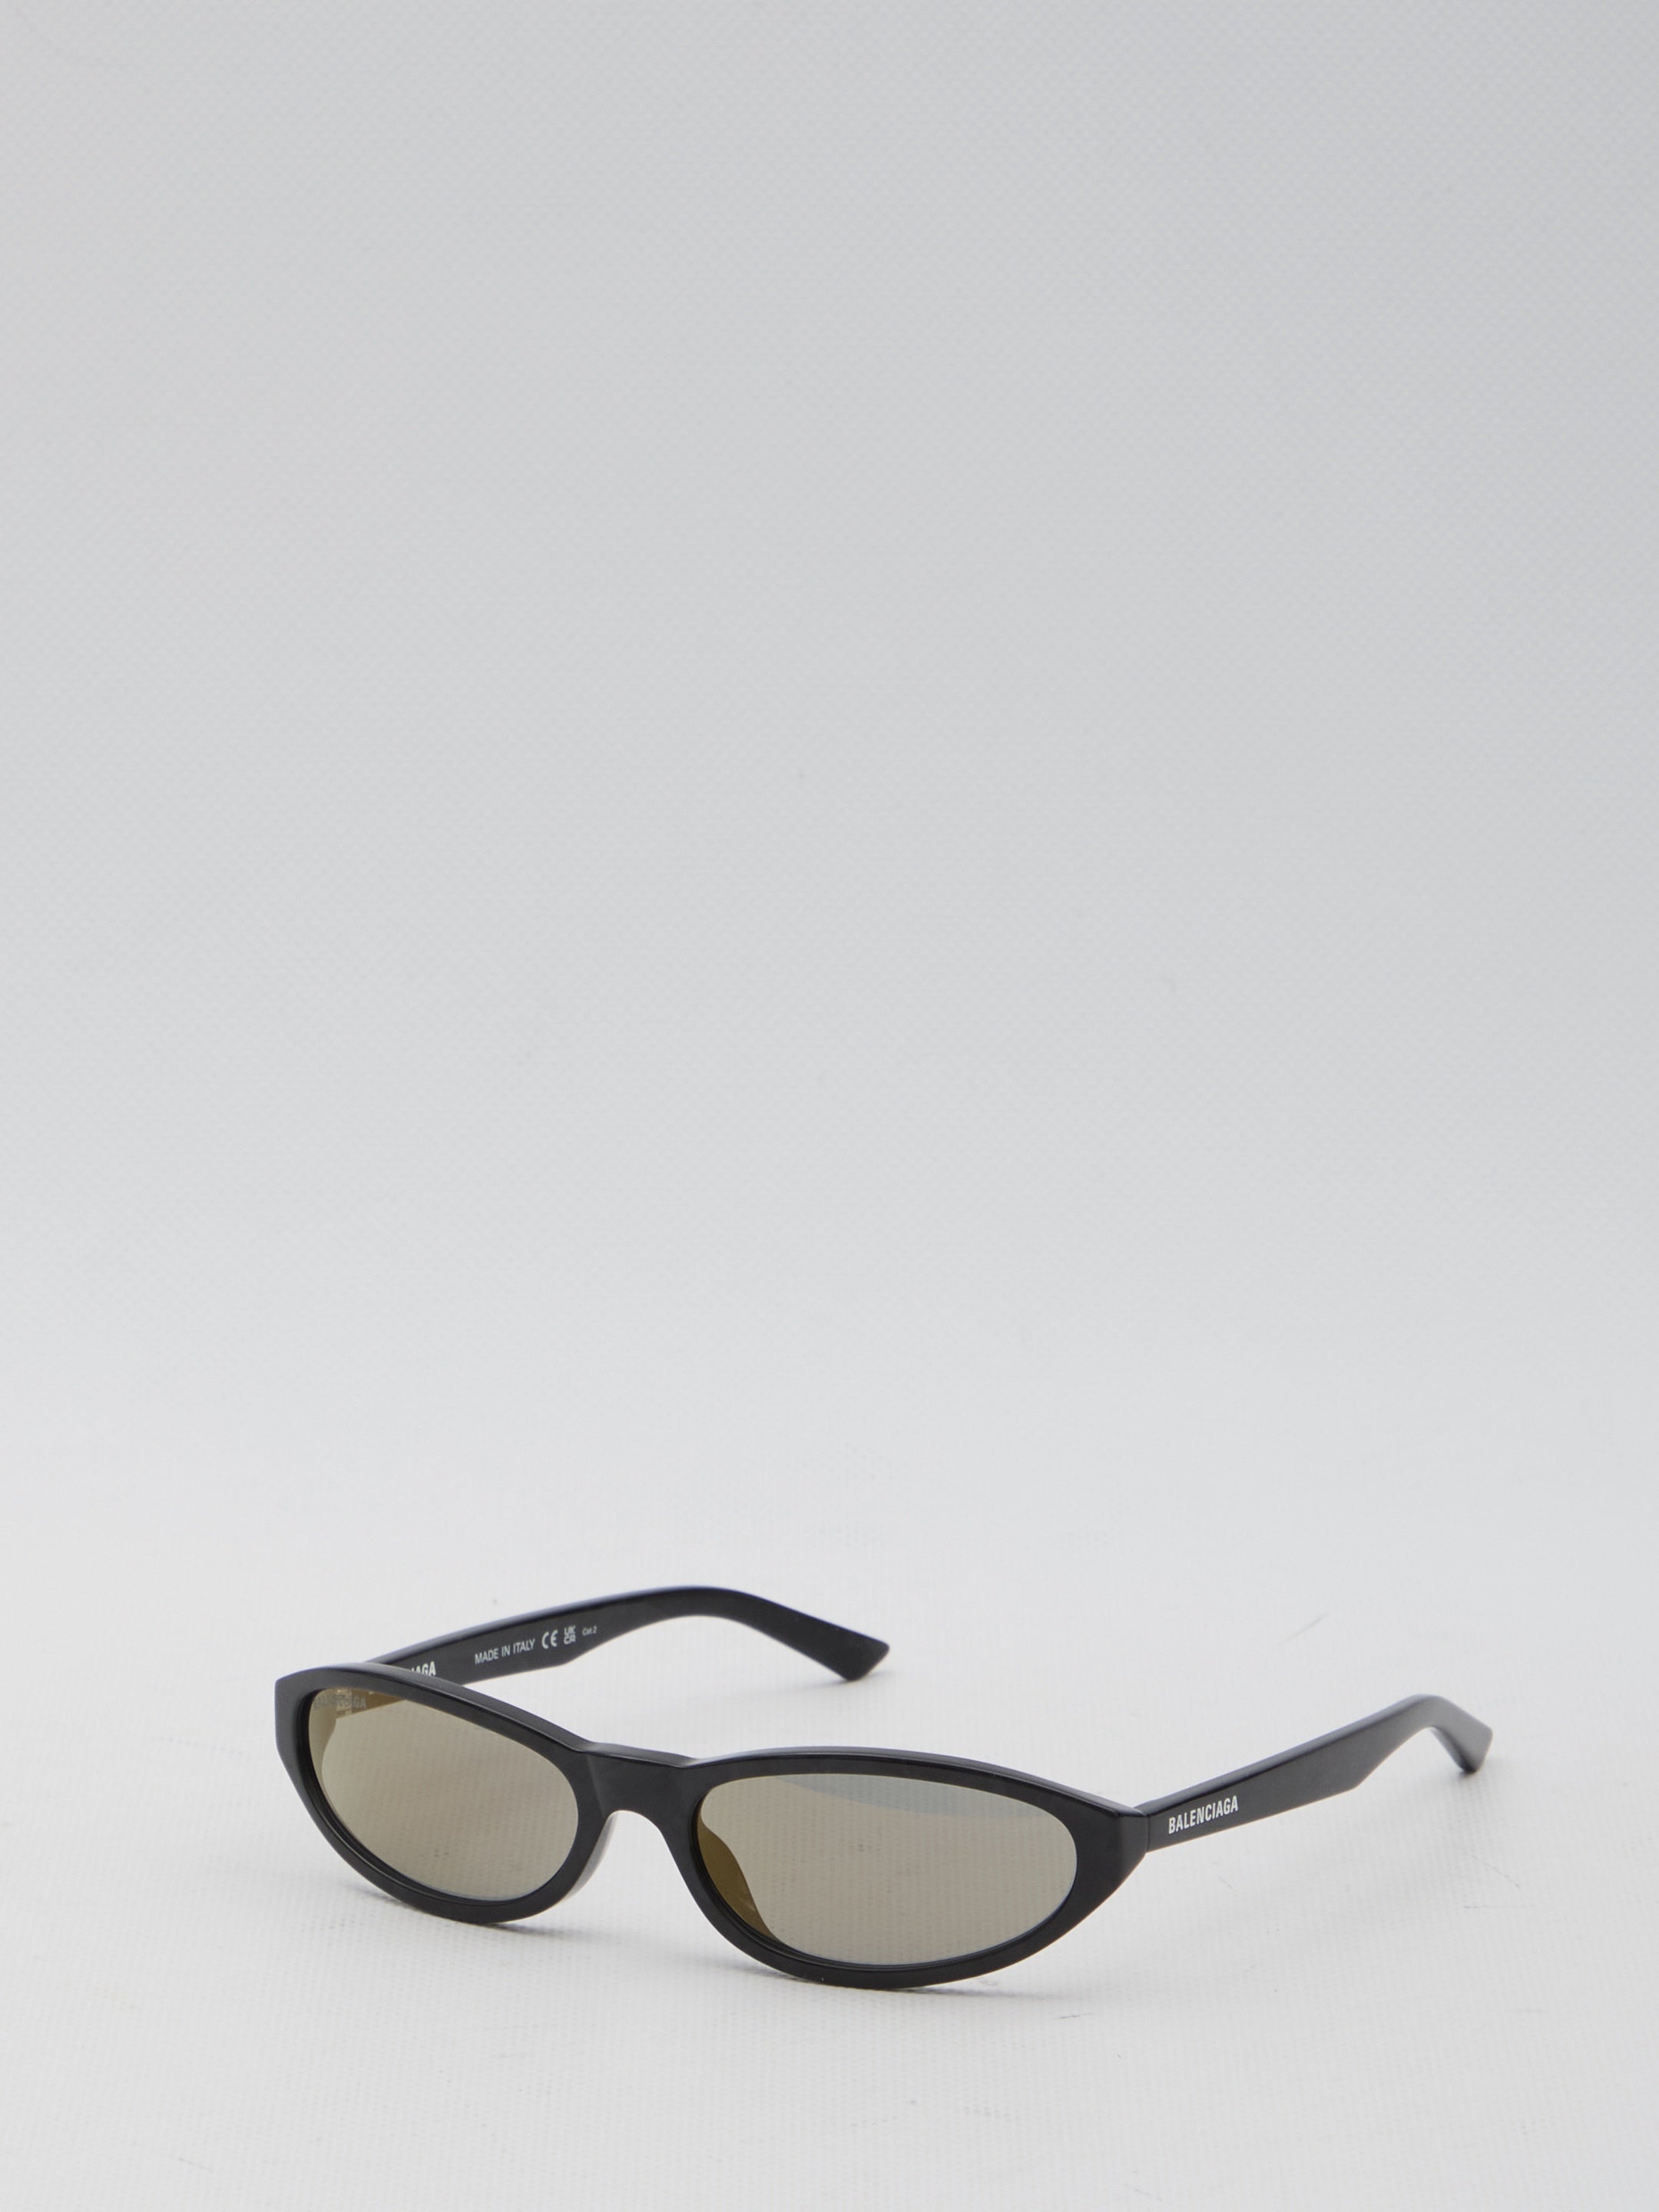 Neo Round sunglasses